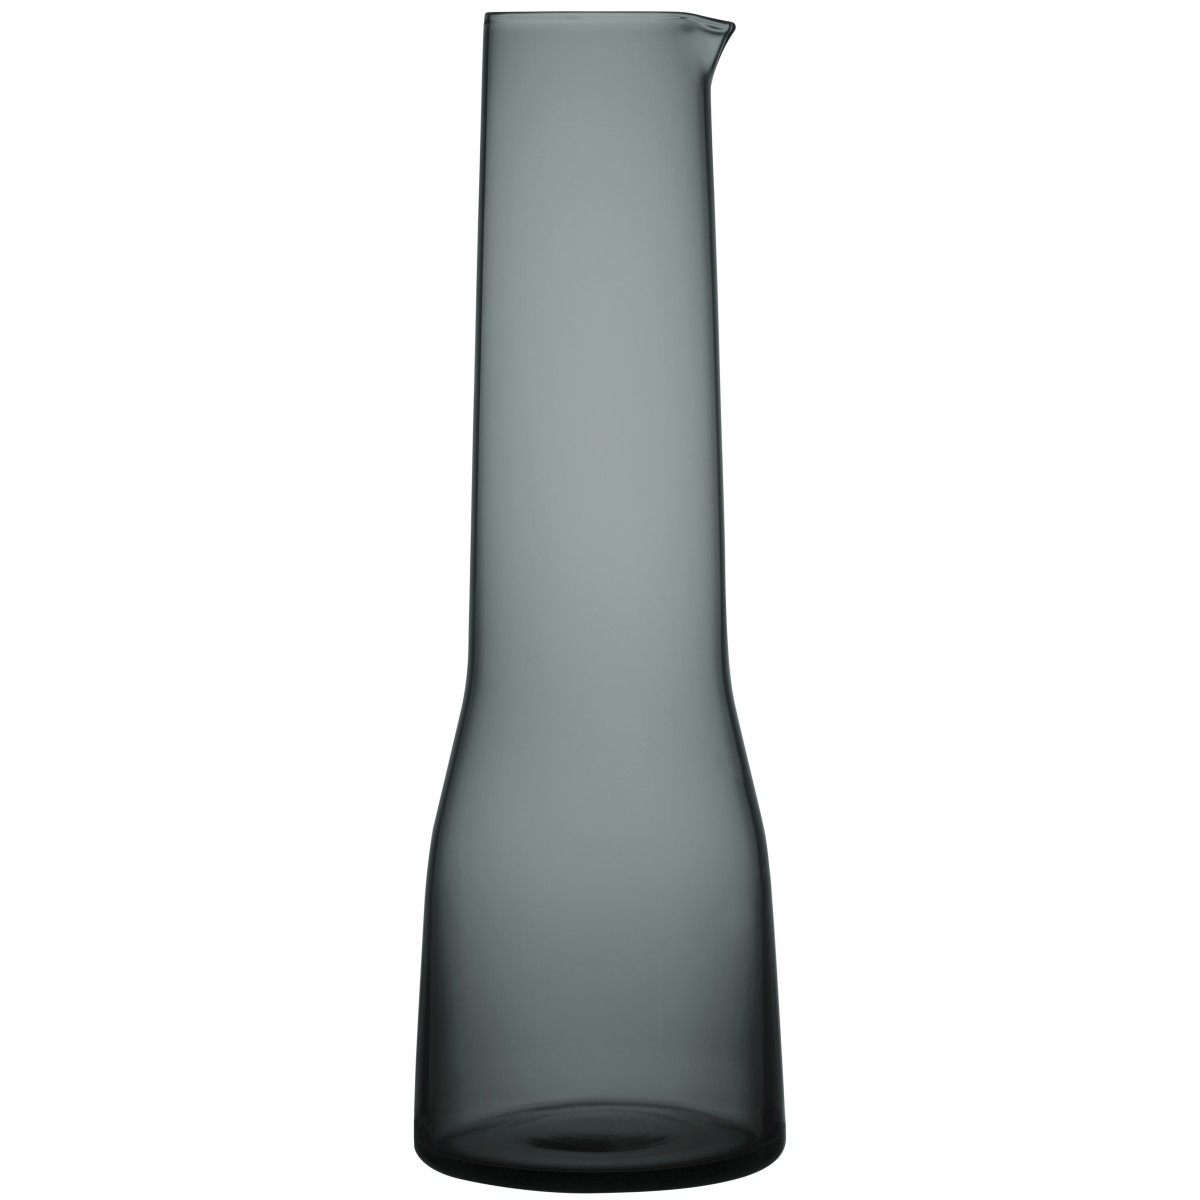 100cl - dark grey pitcher Essence